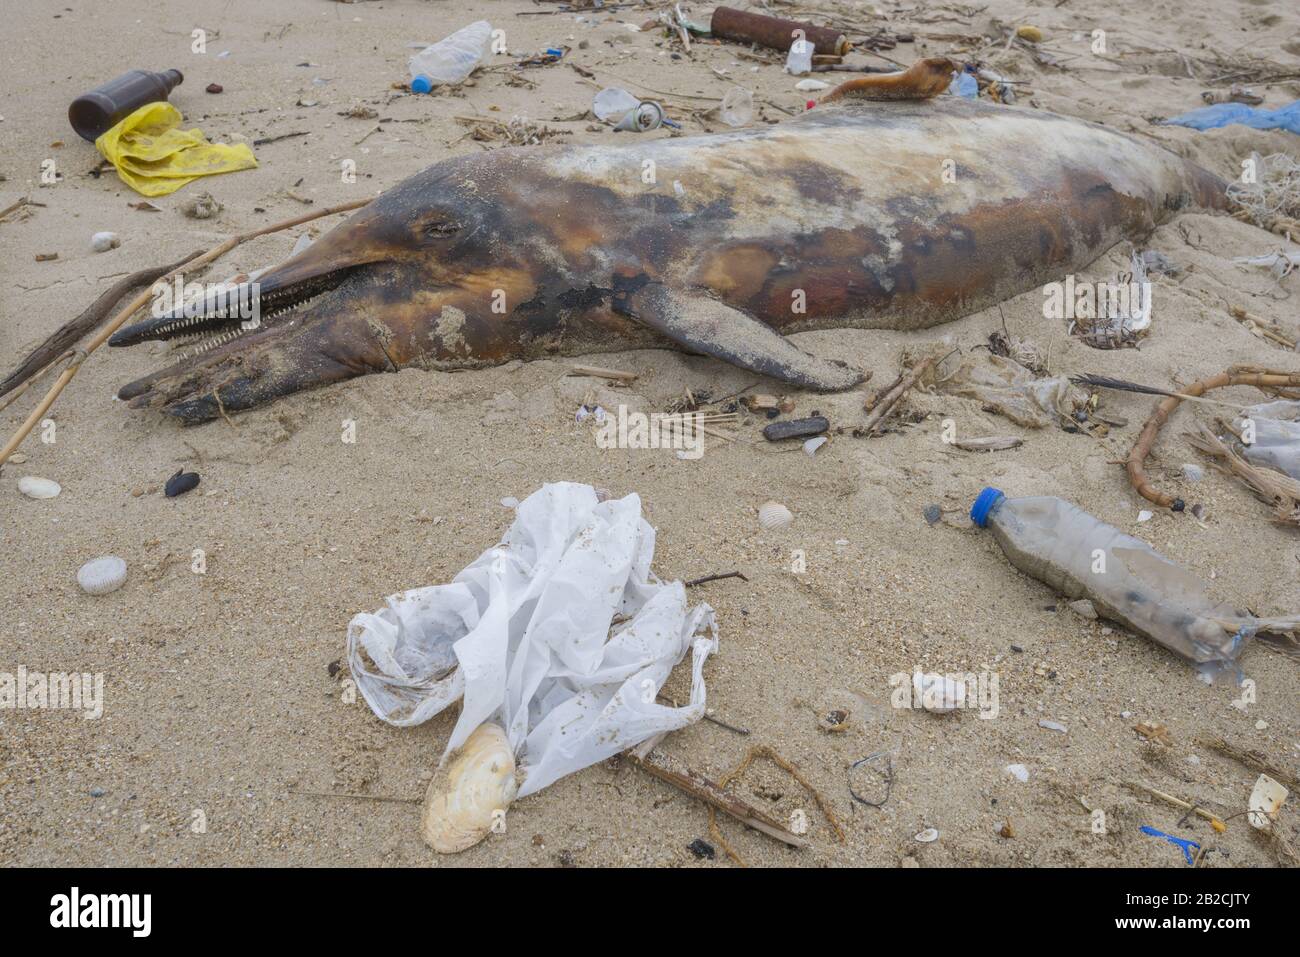 Delphin, der von den Wellen geworfen wird, liegt am Strand und ist von Plastikmüll umgeben. Flaschen, Beutel und andere Kunststoffschutt in der Nähe von ist ein totes Delphin am Strand. Plastische Verschmutzung tötet Meerestiere Stockfoto